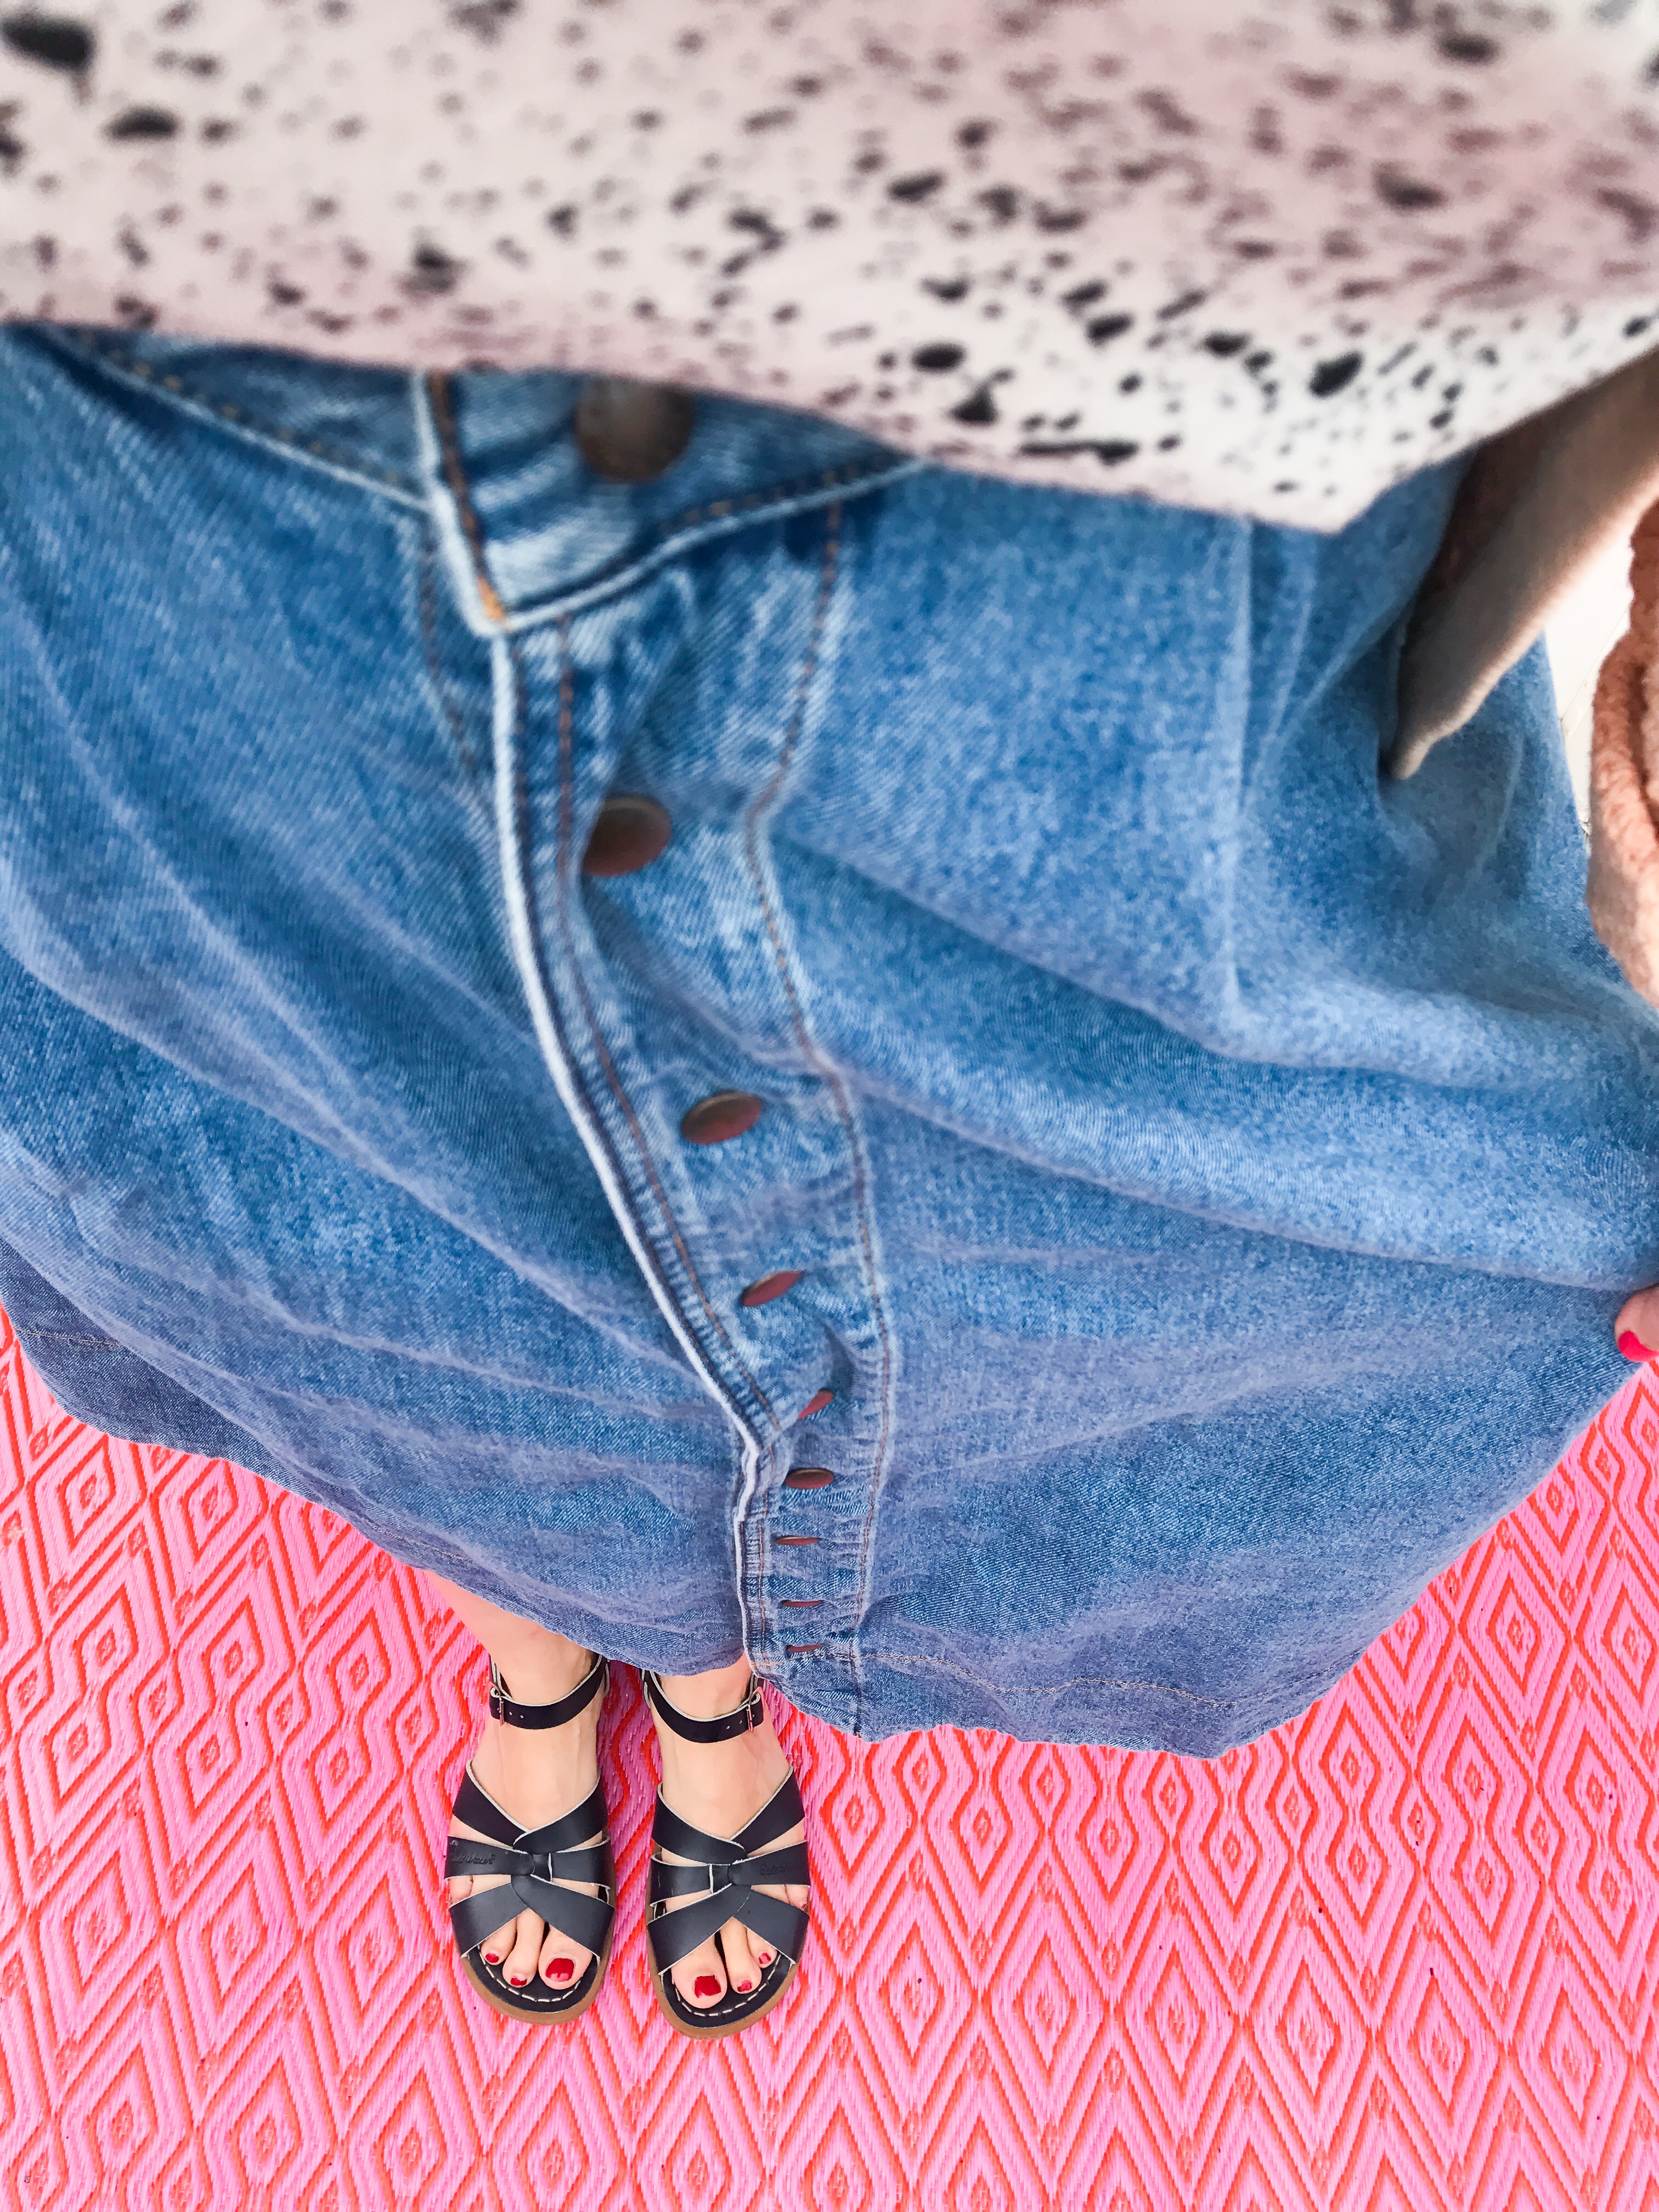 Outdoor Teppich in Pink gemustert - perfekter Untergrund für’s Outfit Foto